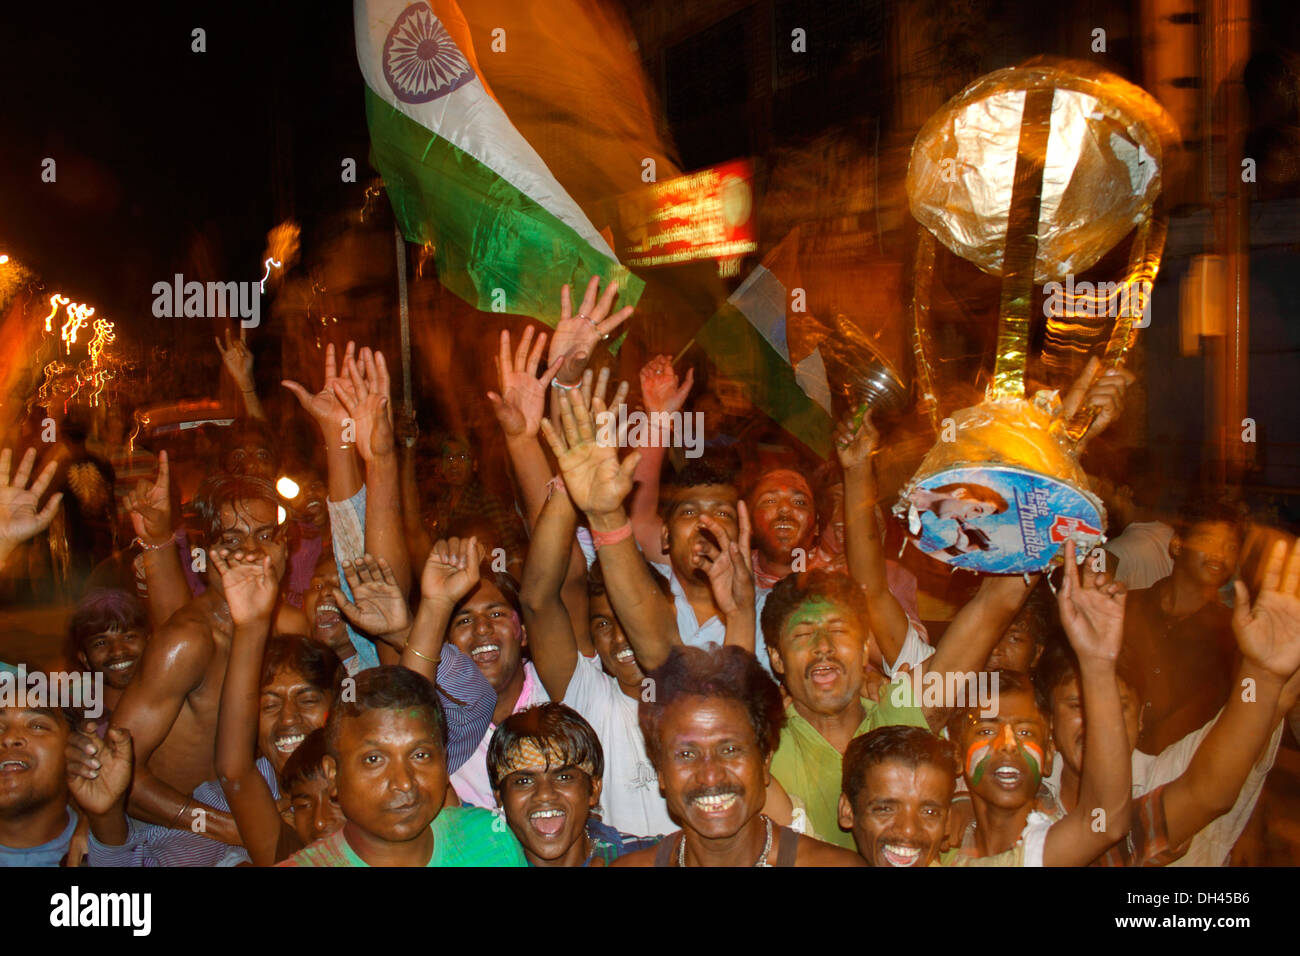 La célébration de la victoire des peuples indiens de la Coupe du Monde de Cricket Kolkata Inde Asie Banque D'Images